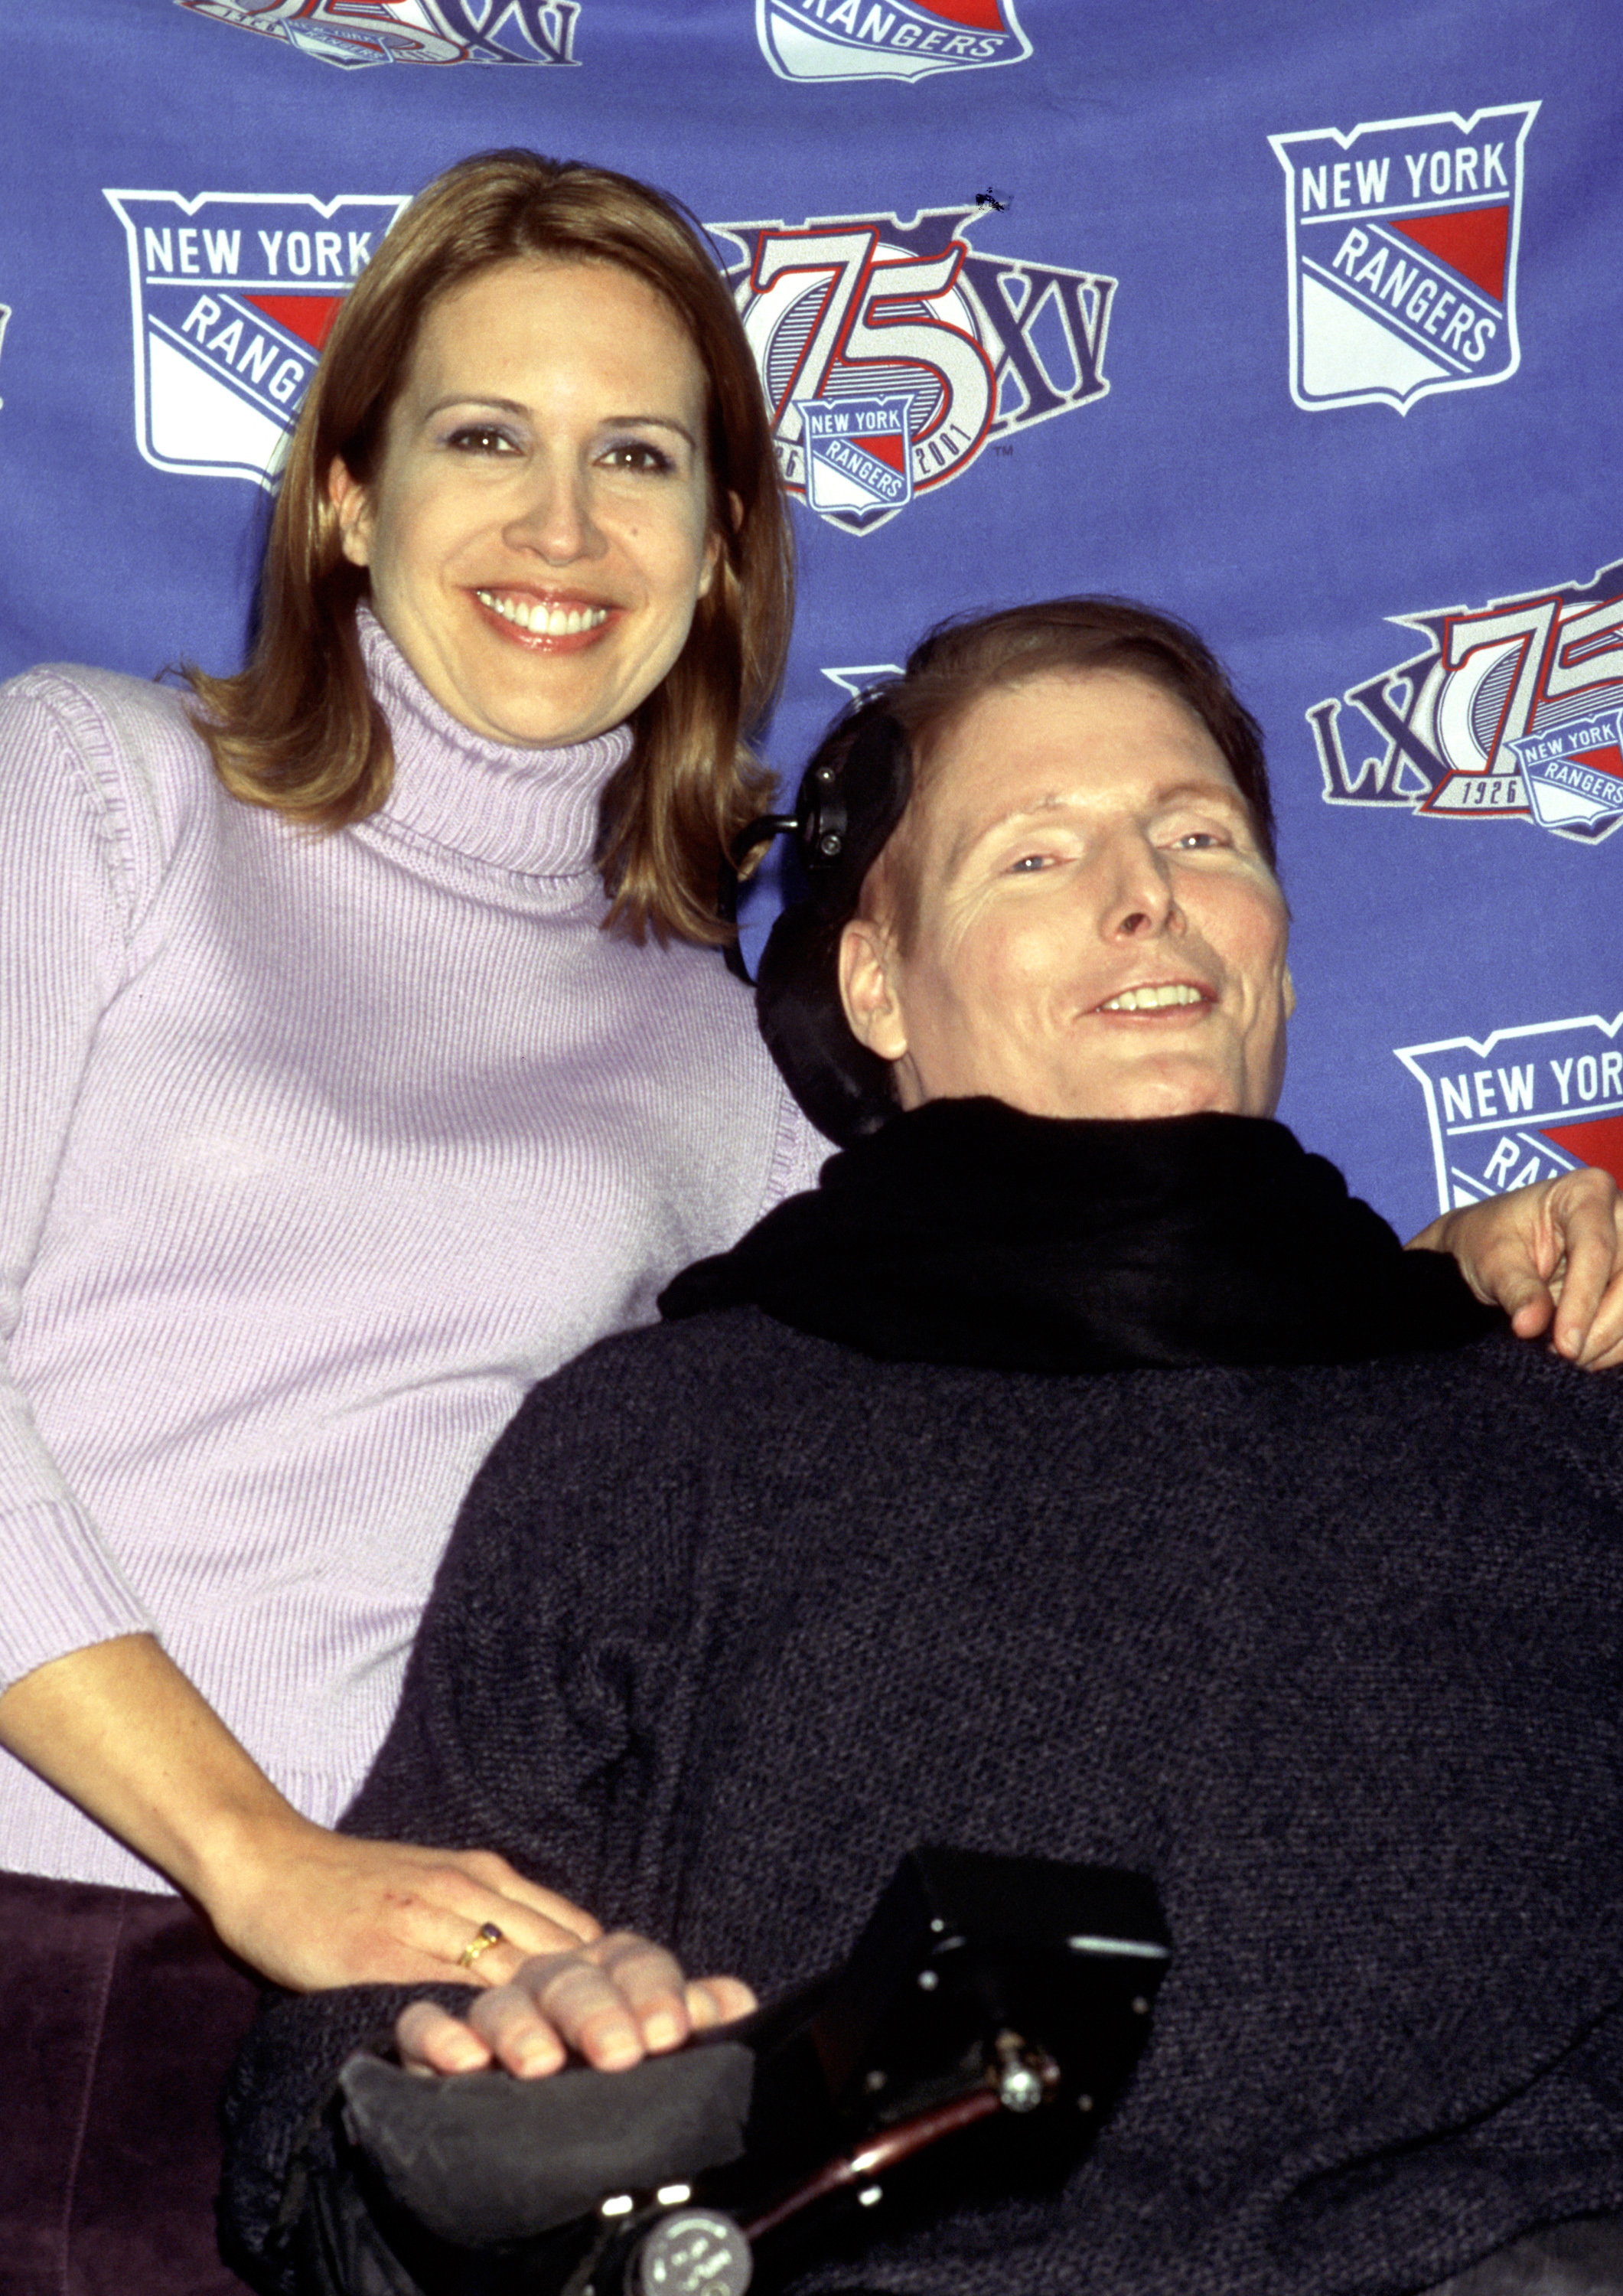 Dana y Christopher Reeve durante el partido de hockey de famosos SuperSkate 2001 en el Madison Square Garden de Nueva York | Foto: Getty Images